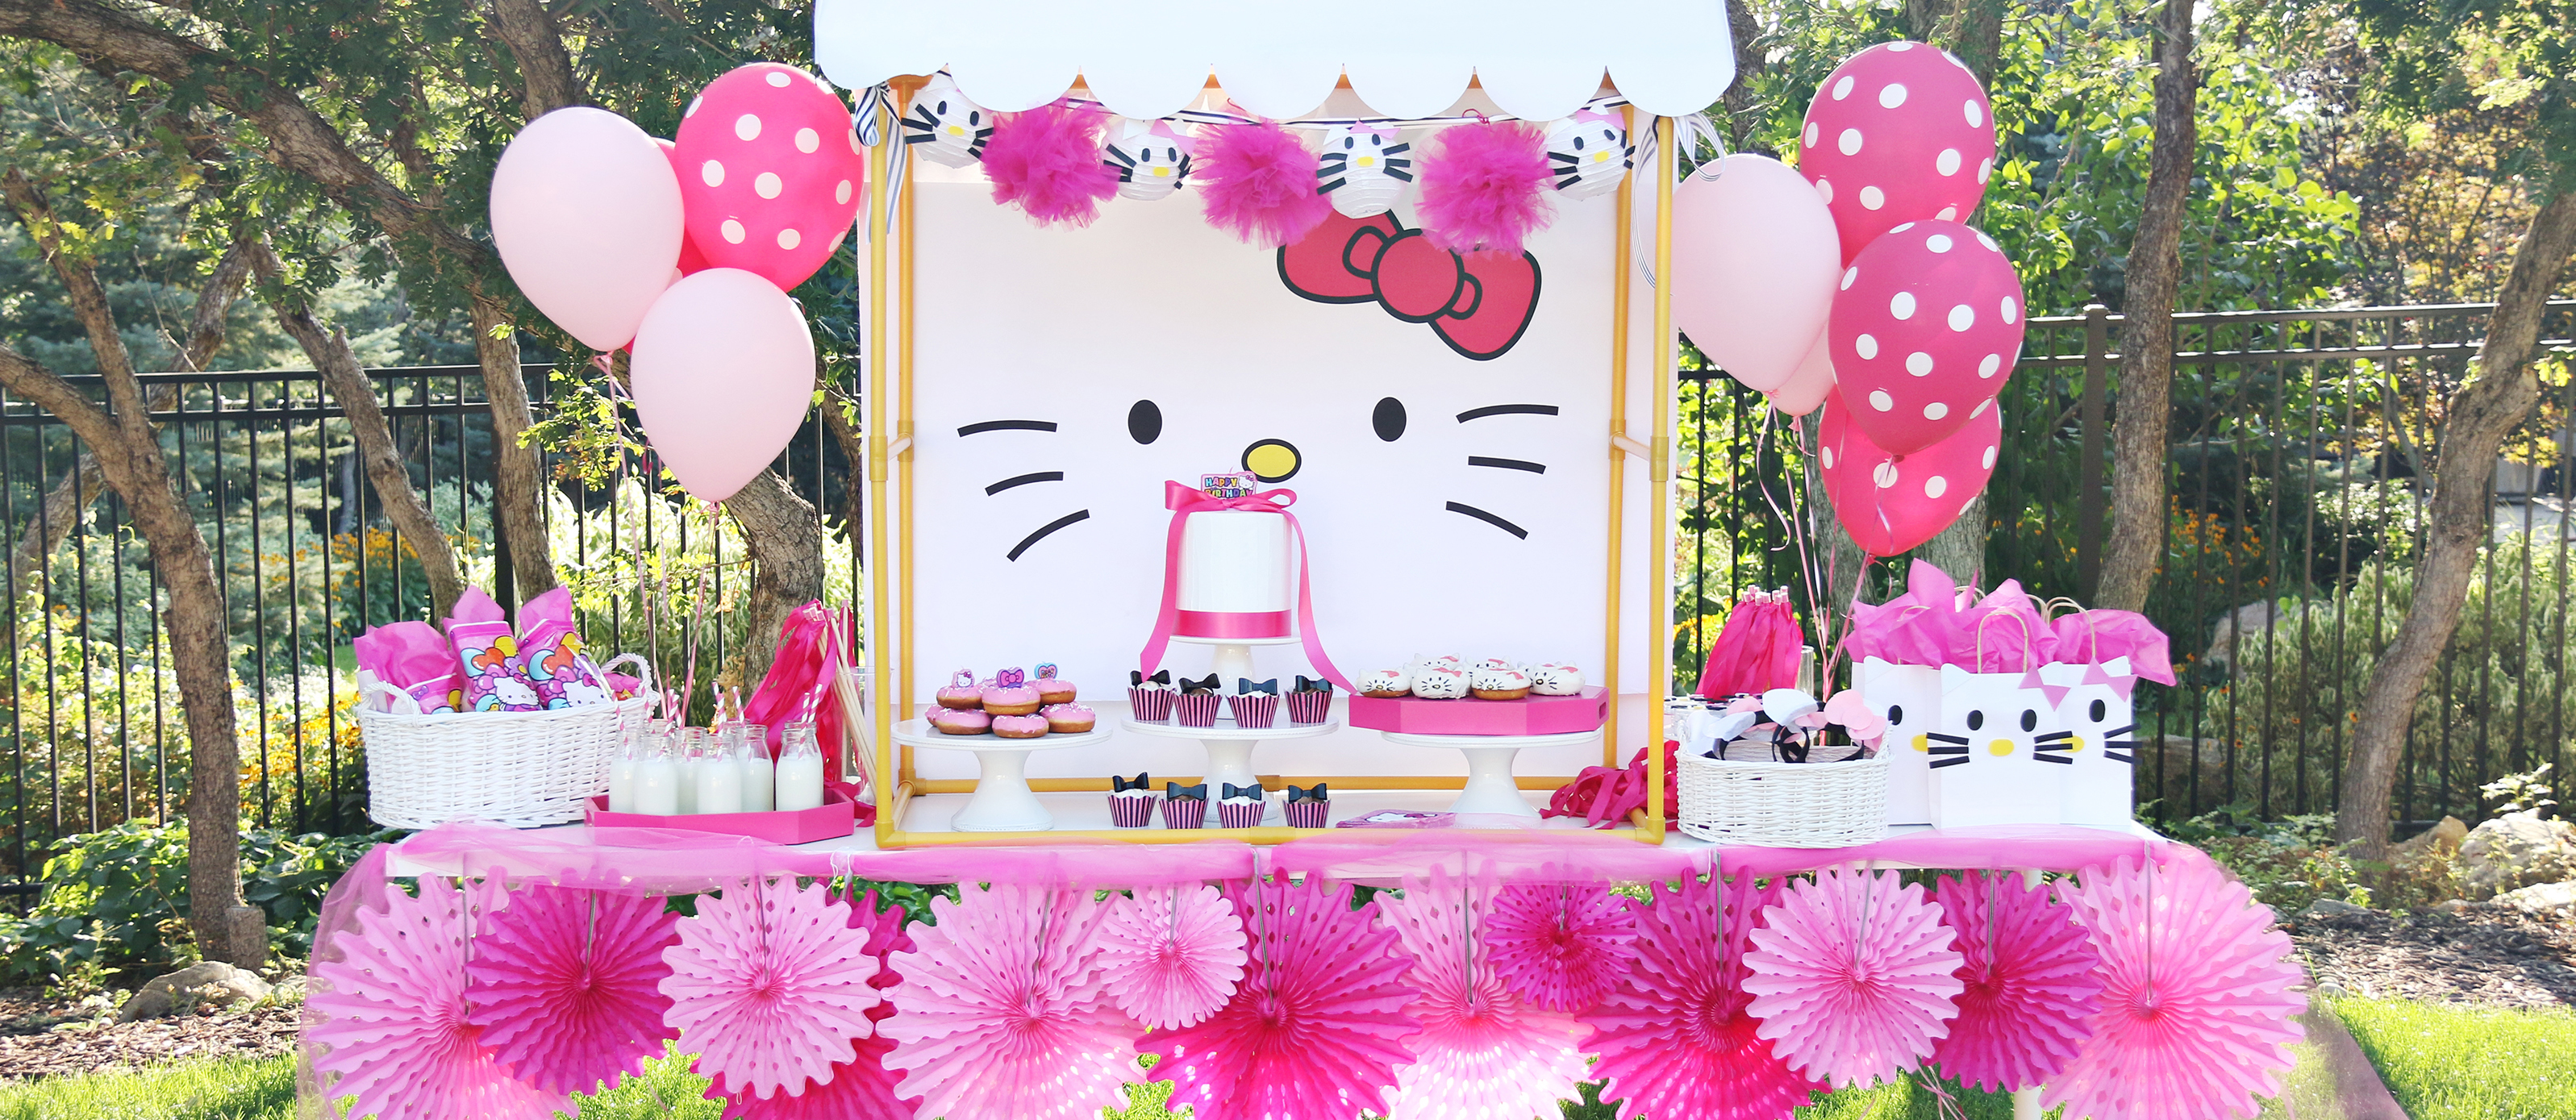 Chezmaitaipearls: Hello Kitty Theme Party Decorations